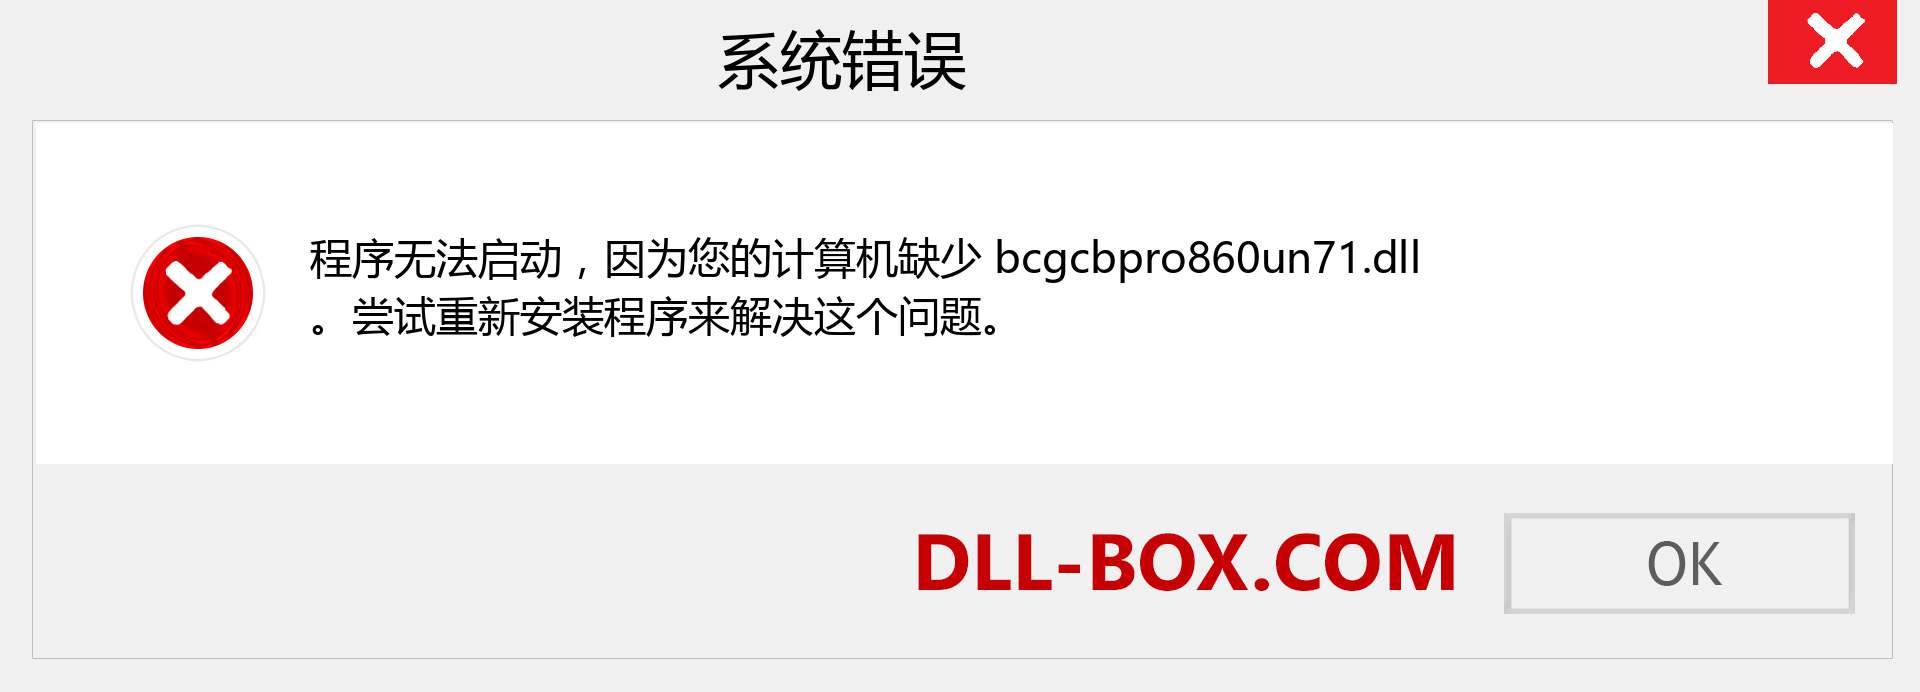 bcgcbpro860un71.dll 文件丢失？。 适用于 Windows 7、8、10 的下载 - 修复 Windows、照片、图像上的 bcgcbpro860un71 dll 丢失错误